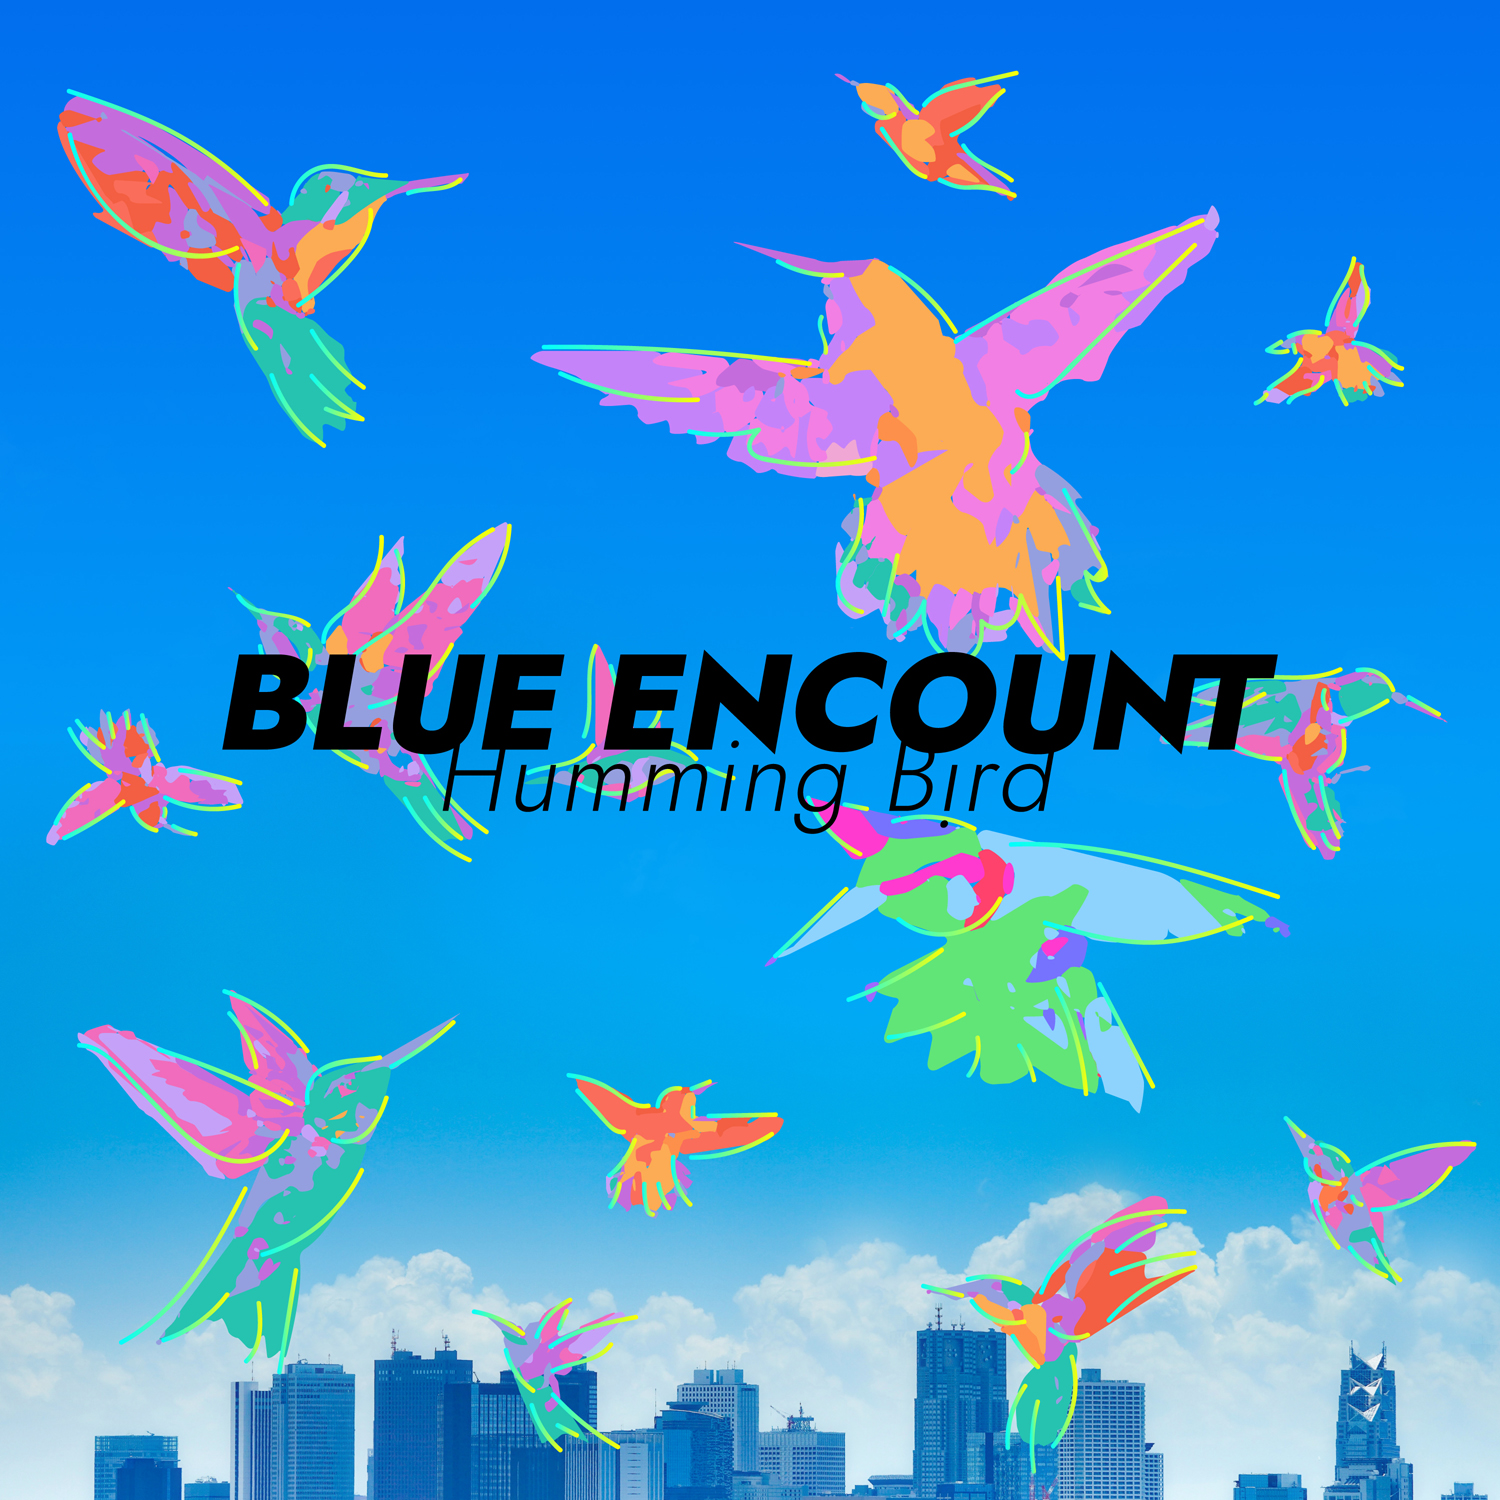 Blue Encount 本日リリースの新曲 ハミングバード 使用されたtvアニメ あひるの空 ノンクレジットop映像をyoutubeにて解禁 De Colum